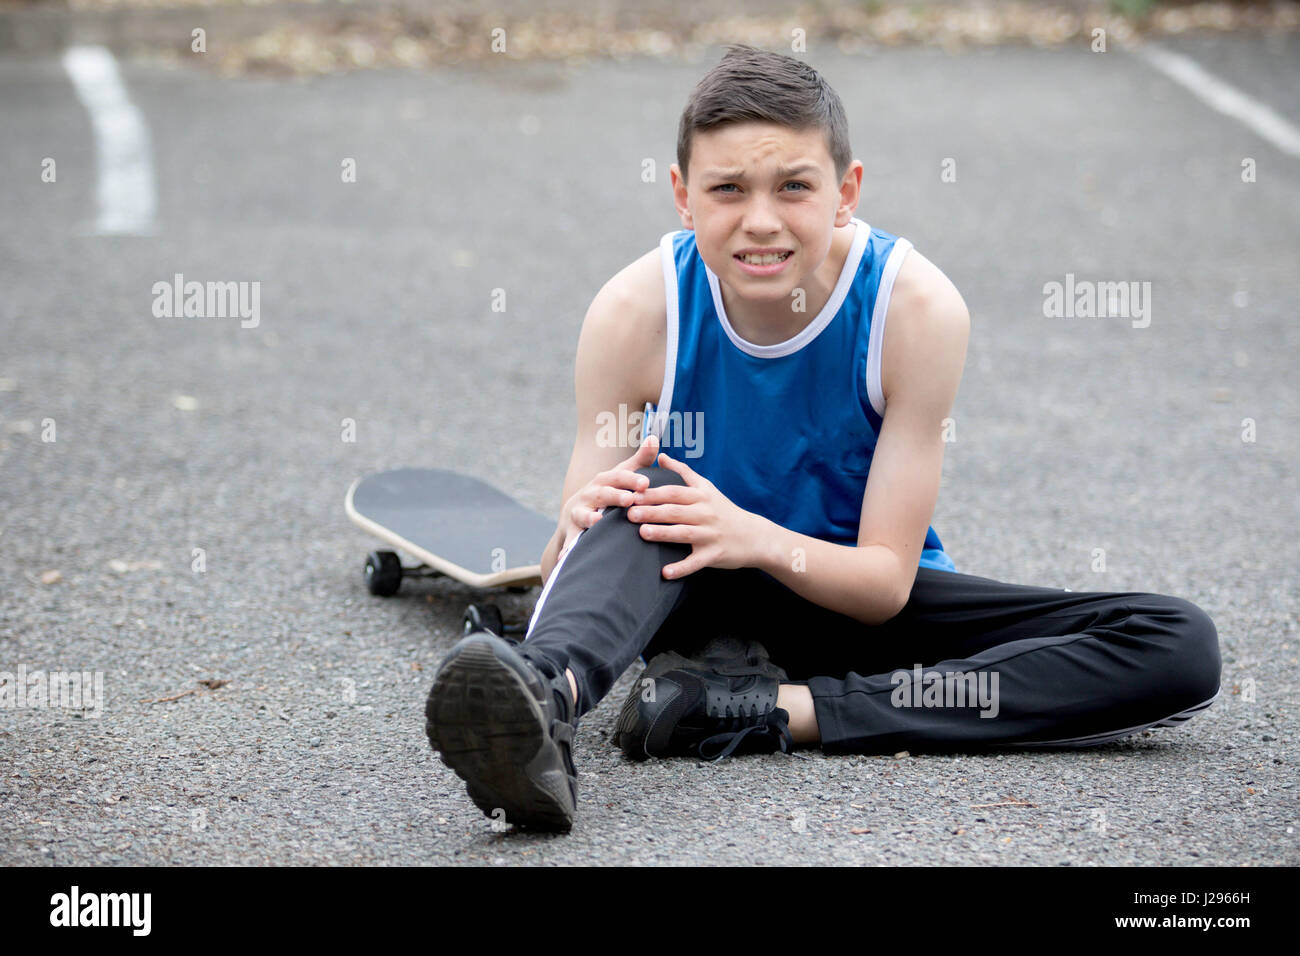 Teenage boy outside with a skateboard Stock Photo - Alamy